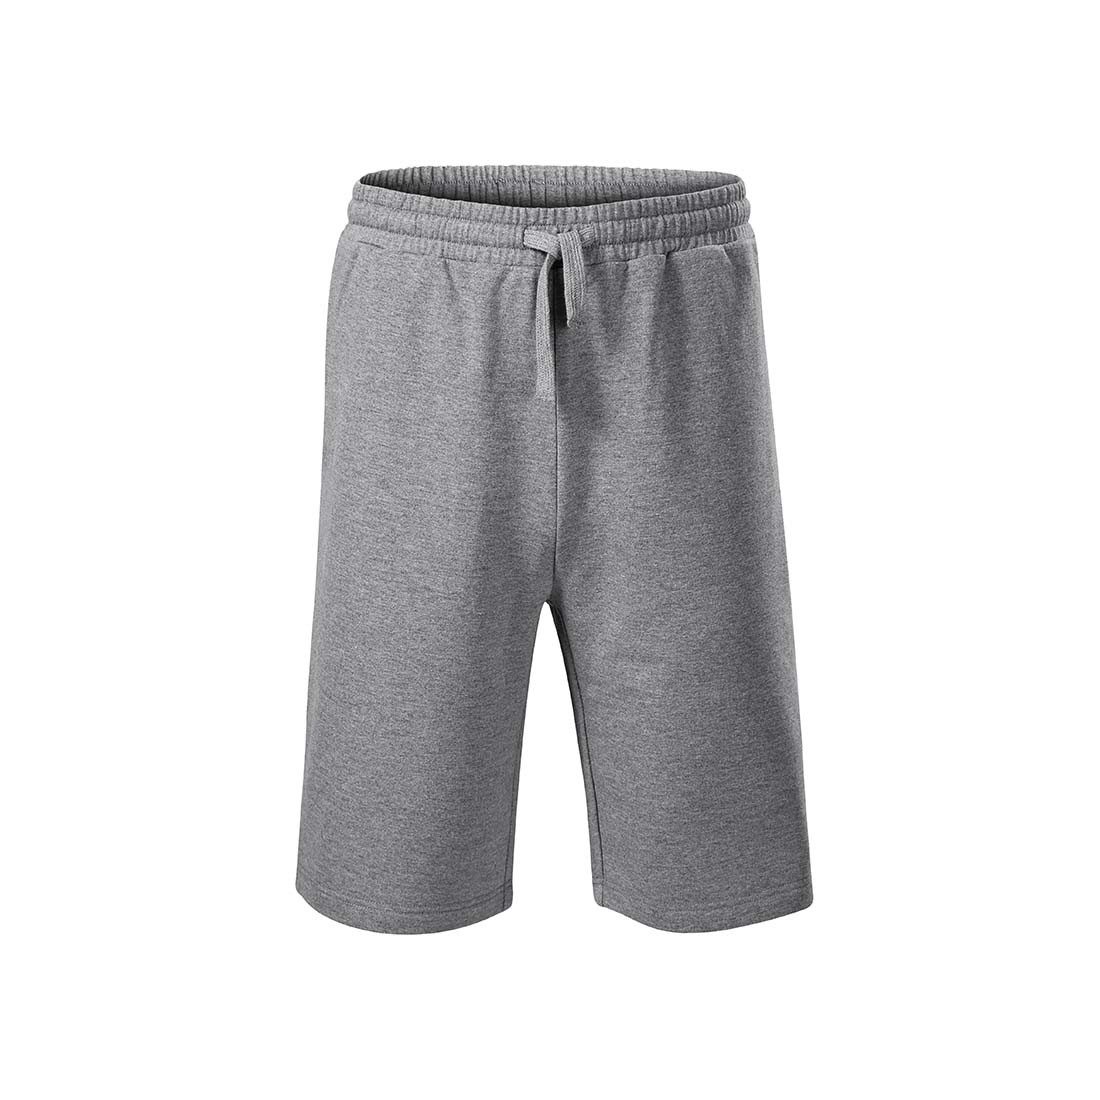 Pantalones cortos deportivos para hombres - Ropa de protección